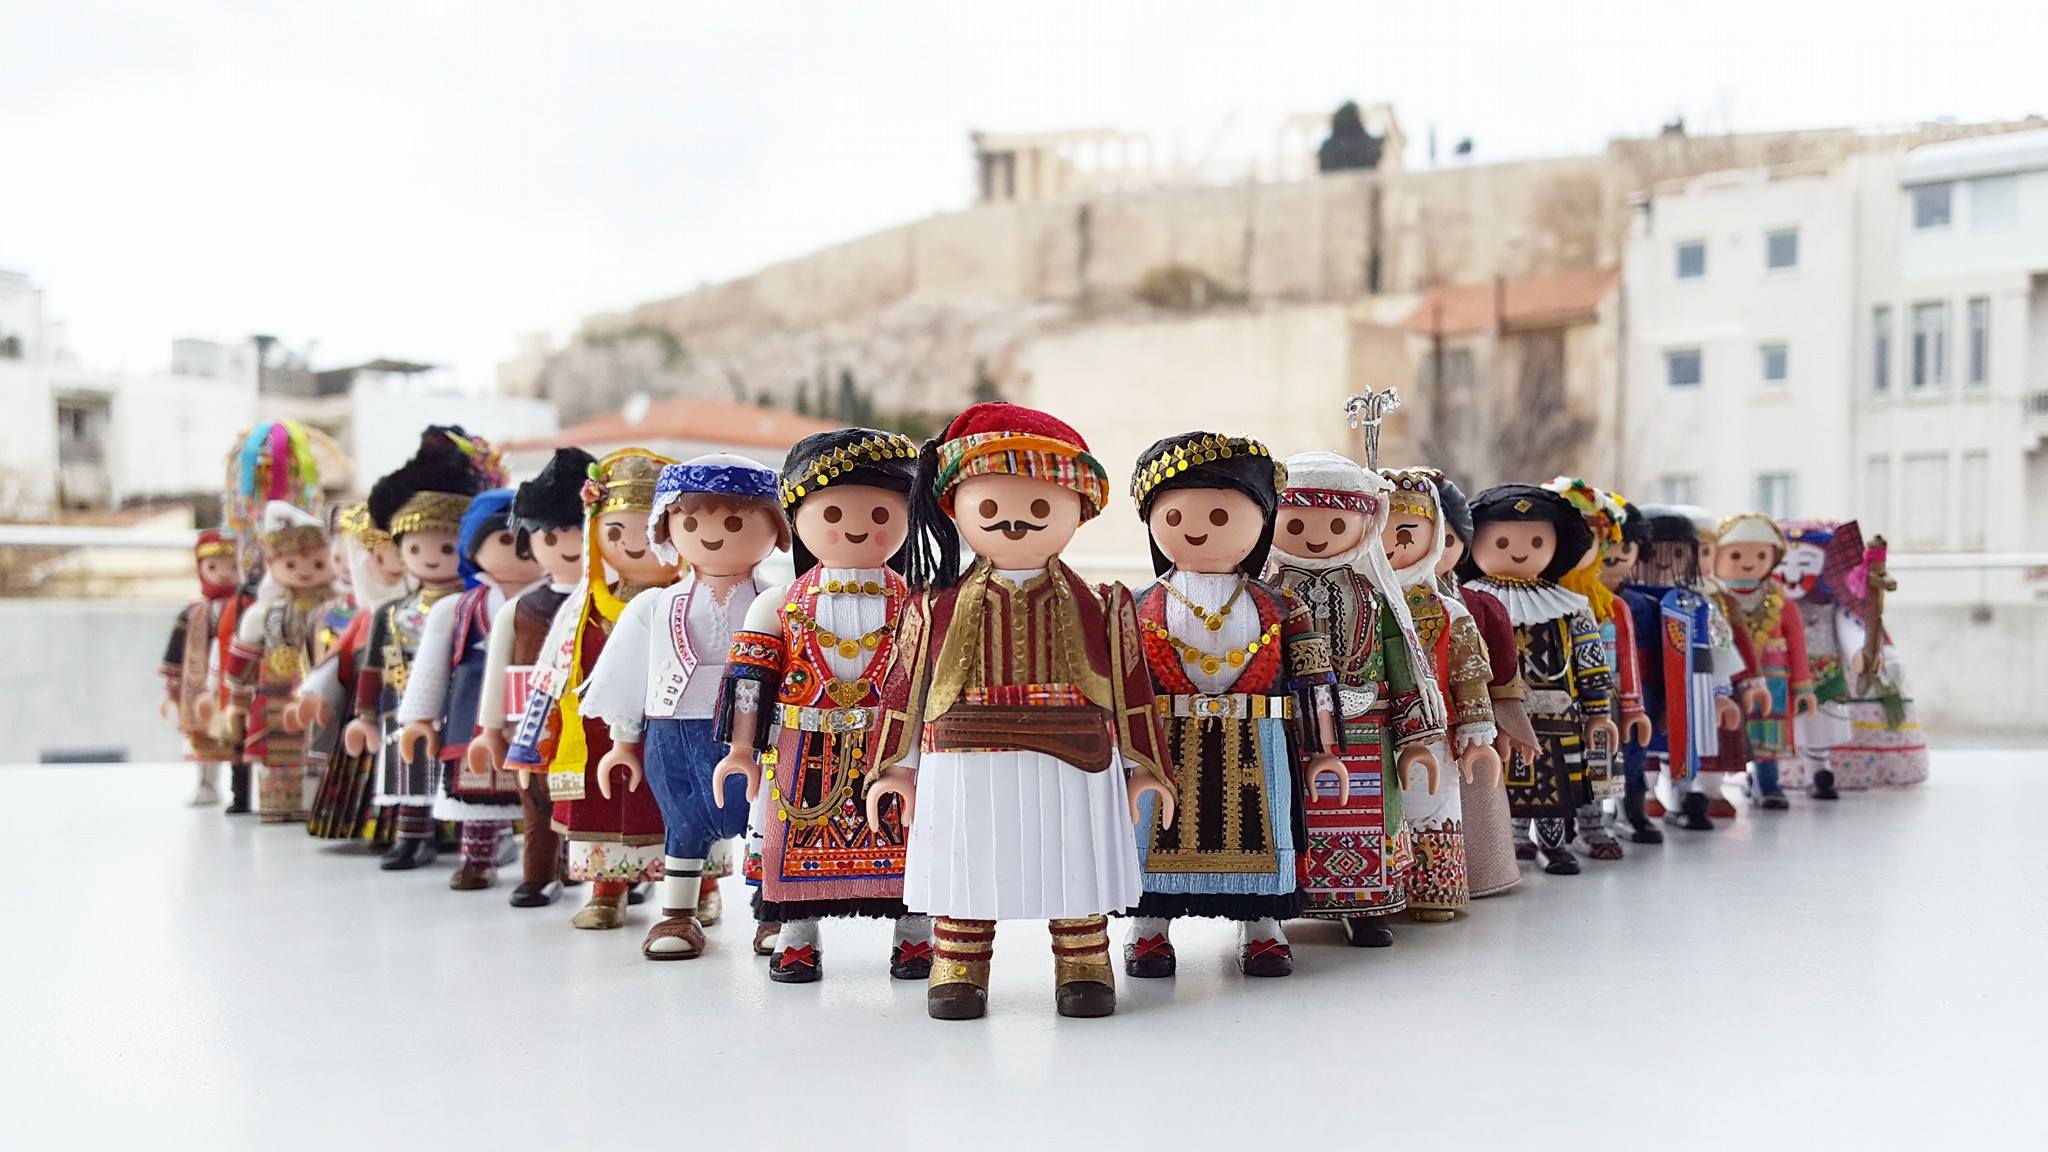 21χρονος Έλληνας ντύνει φιγούρες Playmobil με παραδοσιακές ελληνικές φορεσιές με υλικά και εργαλεία που έχει σπίτι του!